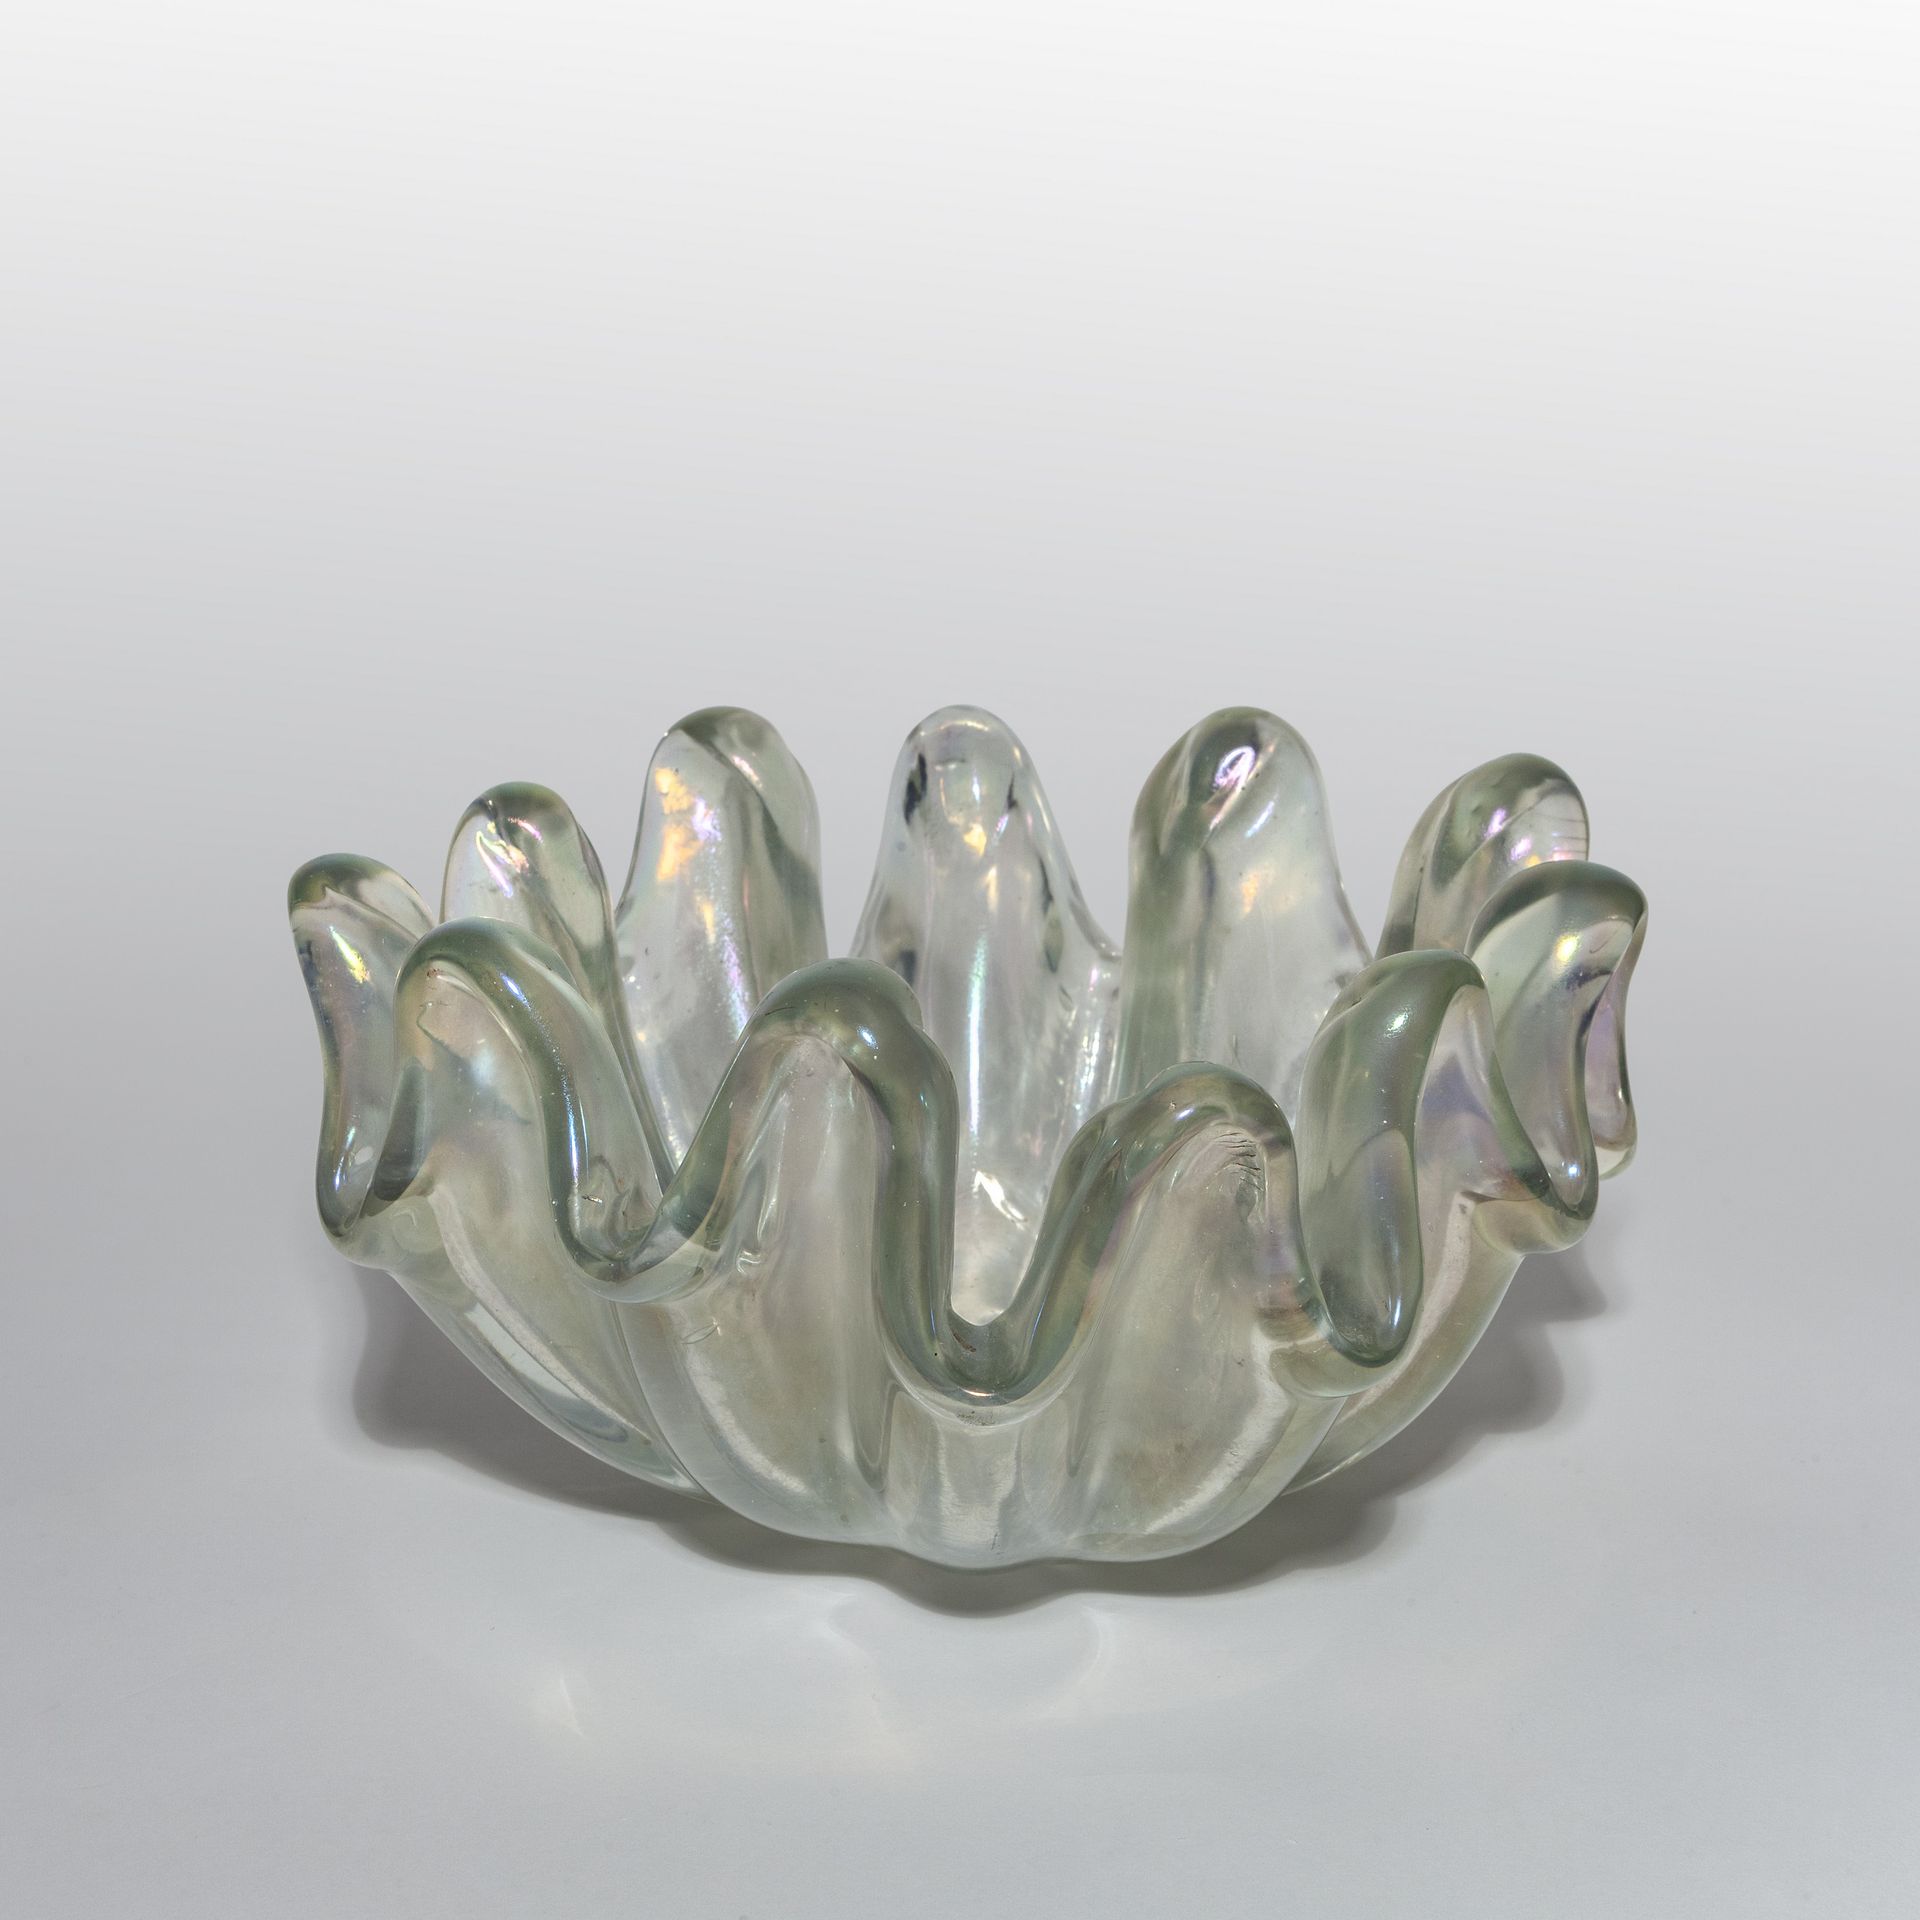 BAROVIER ERCOLE BAROVIER & TOSO ERCOLE BAROVIER & TOSO
贝壳状五彩水晶玻璃花瓶，有深
肋骨和明显的裂片，大&hellip;